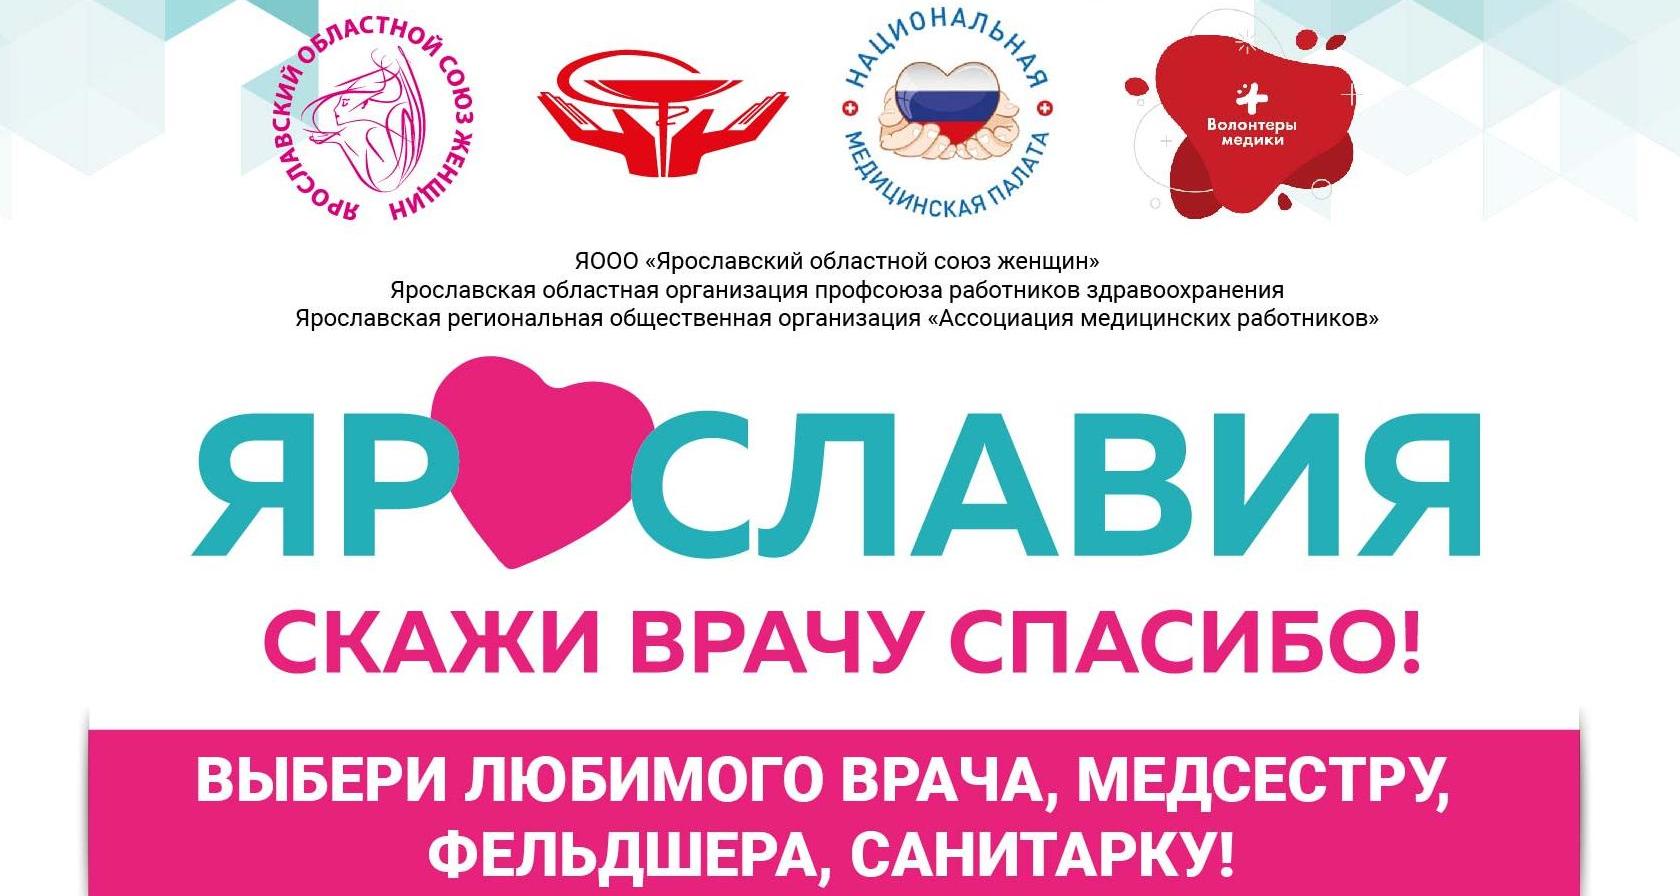 В Ярославской области стартует проект «Скажи врачу спасибо!»